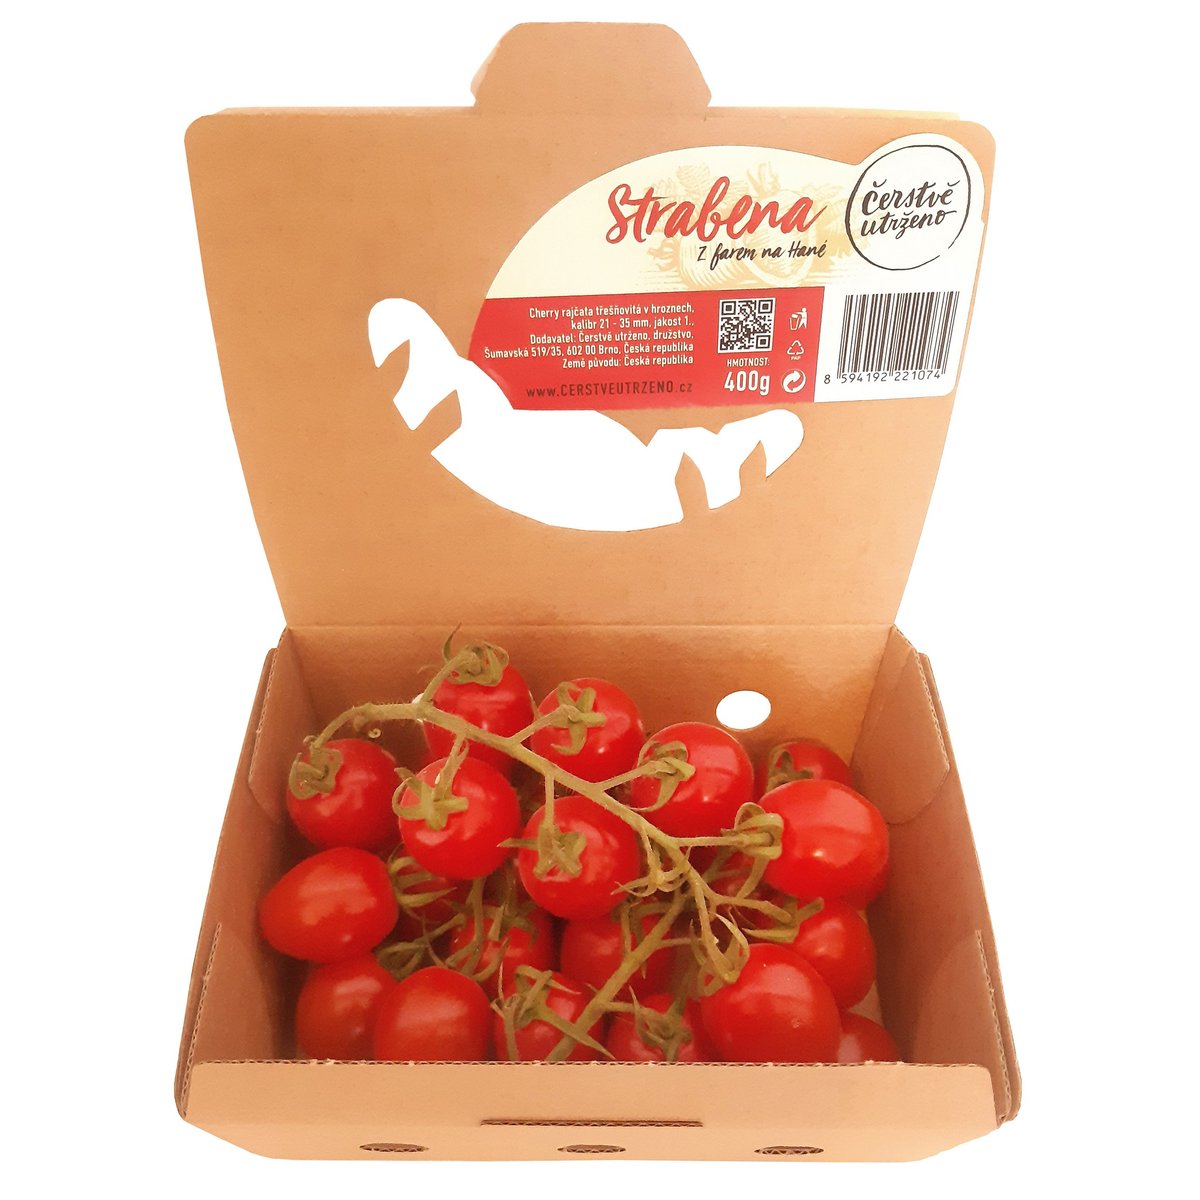 Čerstvě utrženo – Podlouhlá sladká cherry rajčata na větvičce odr. Strabena, vanička